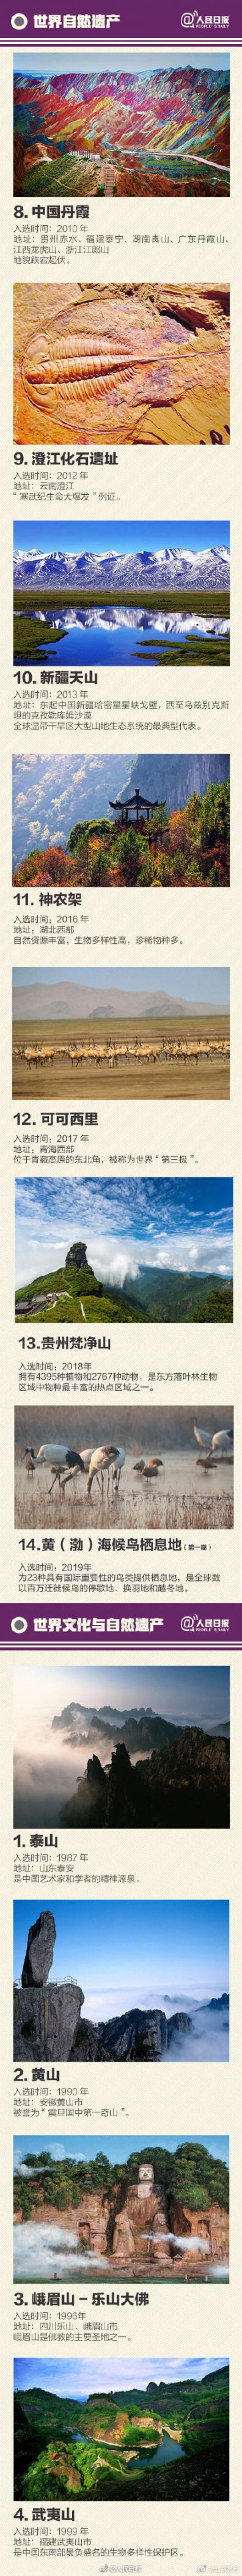 良渚古城遗址申遗成功 中国世界遗产55处全名单公布